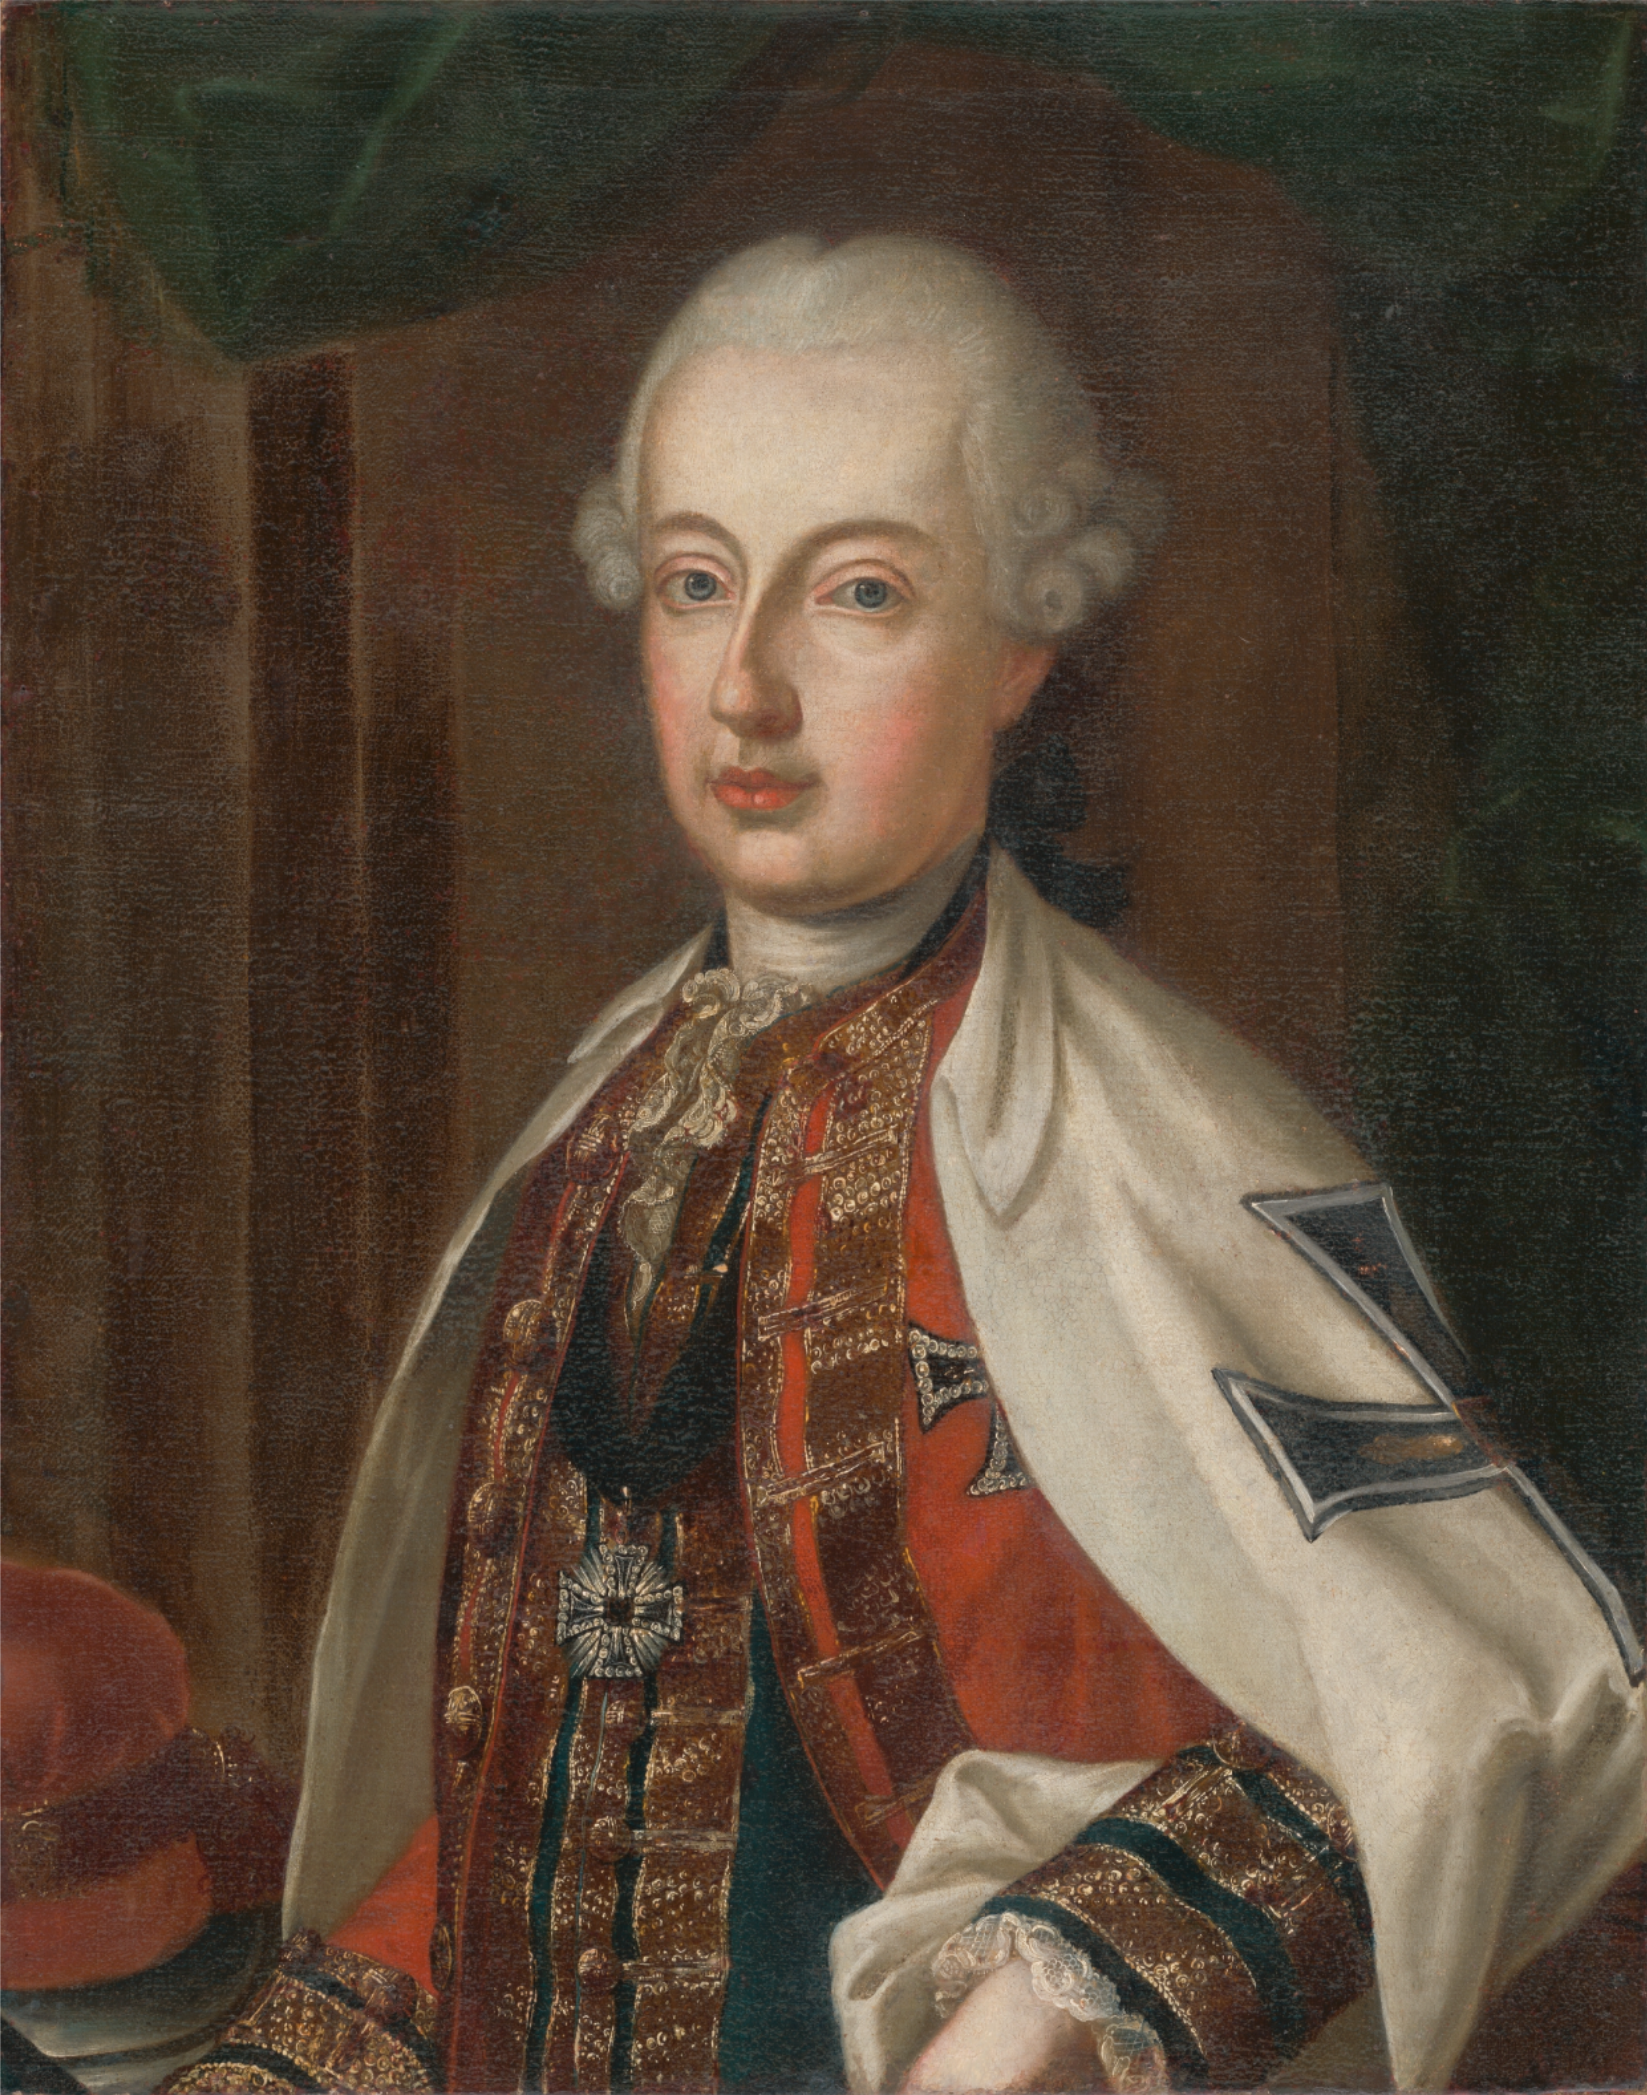 瑪麗亞·特蕾莎(18世紀奧地利哈布斯堡王朝的統治者)